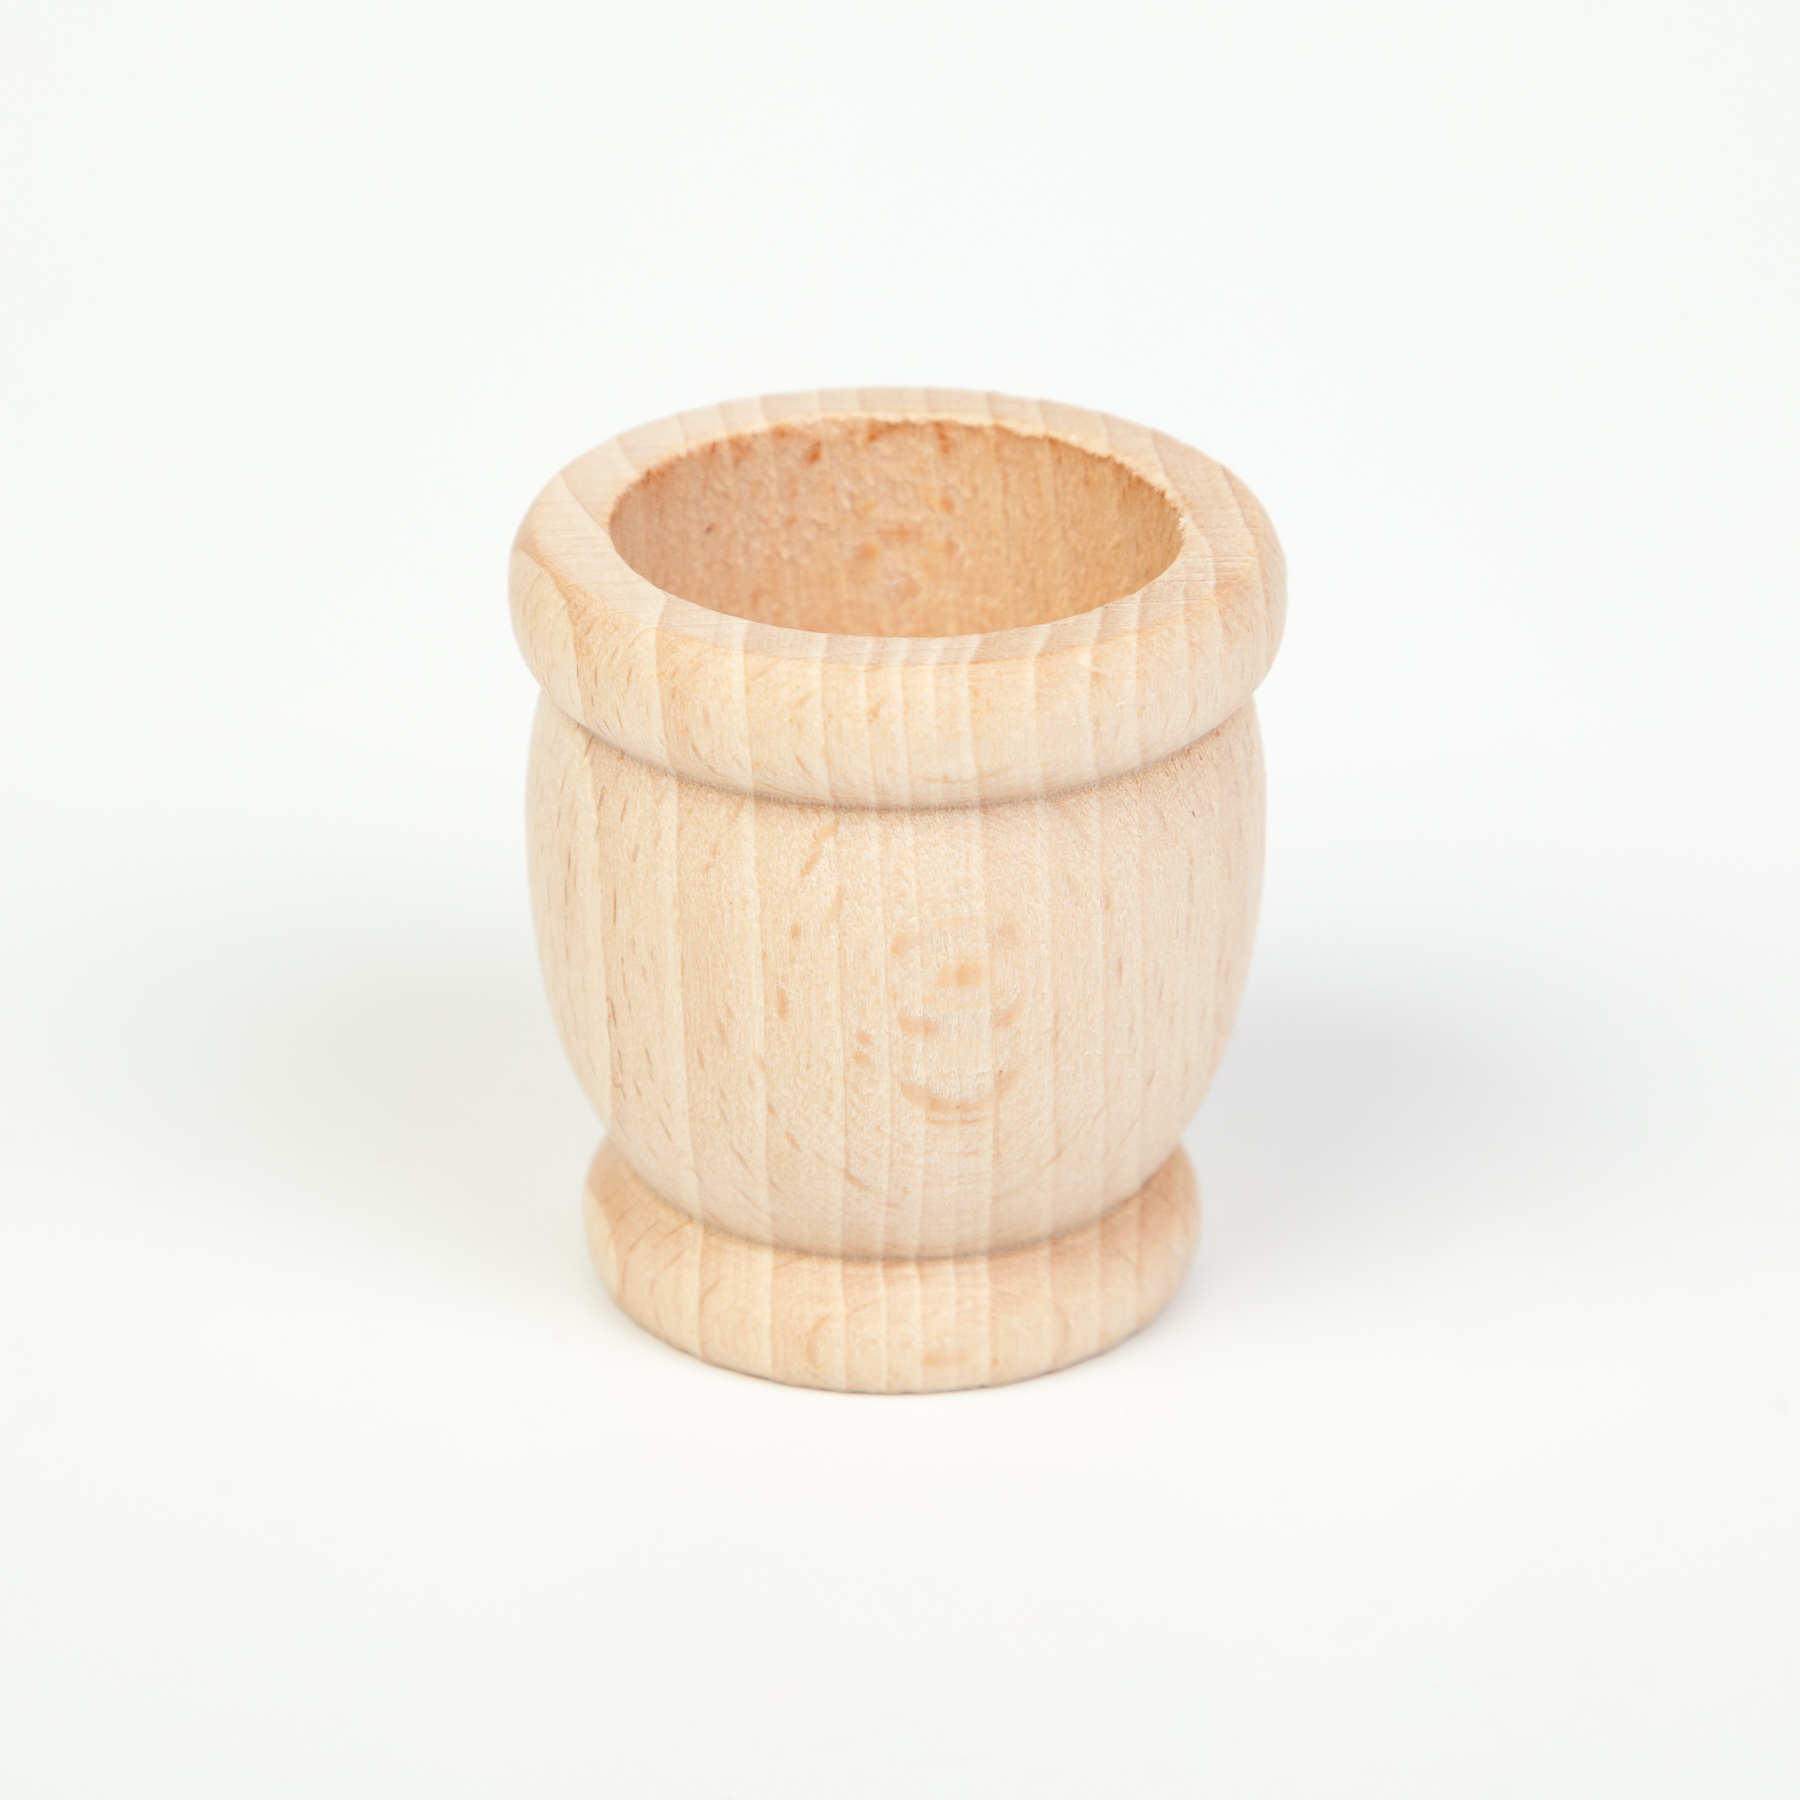 Wood Natural Mates / Pots / Egg Cups 6 pcs